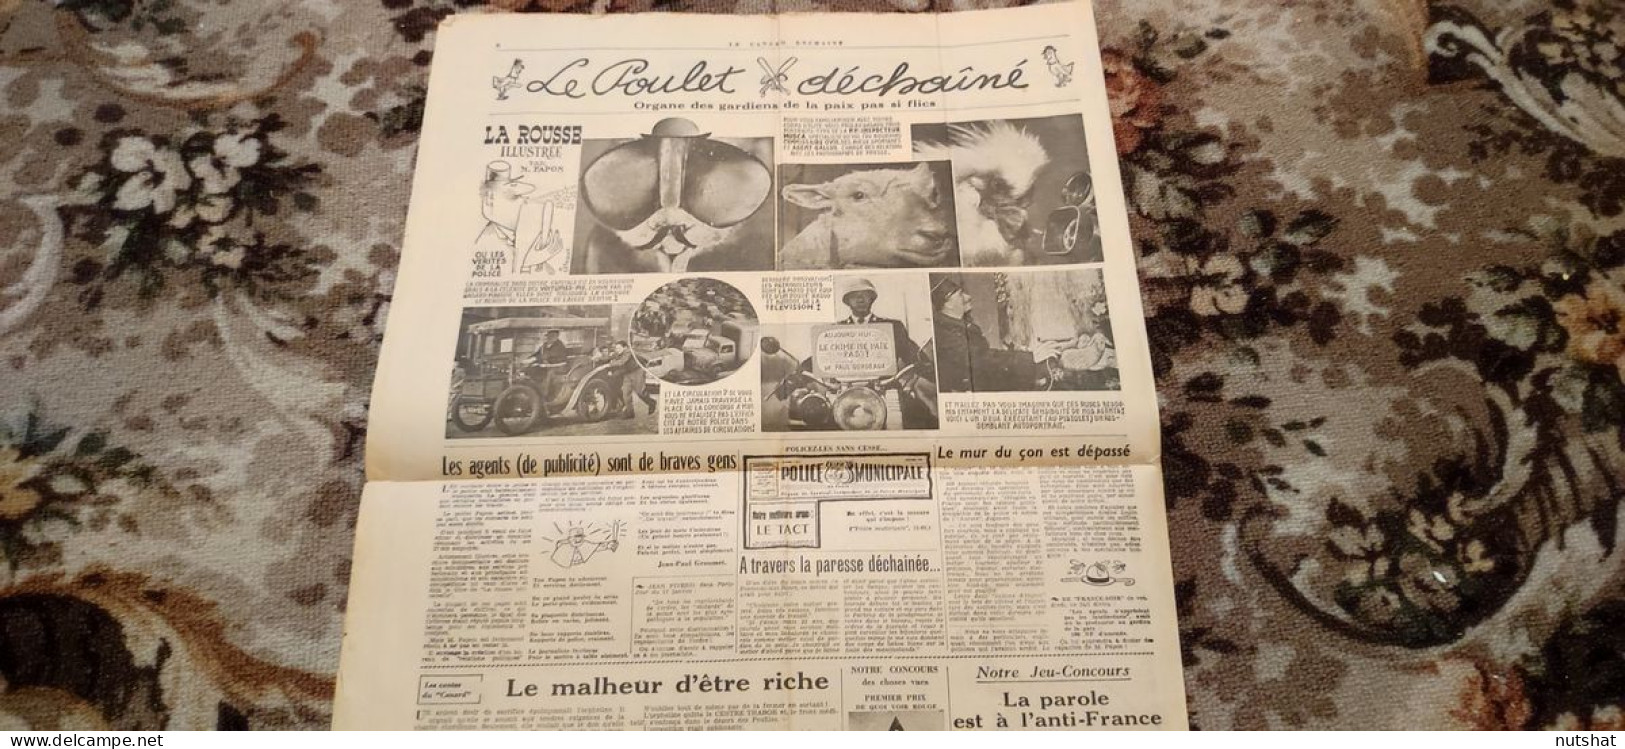 CANARD ENCHAINE 2101 25.01.1961 Le POULET DECHAINE ORGANE Des GARDIENS De PAIX - Politica